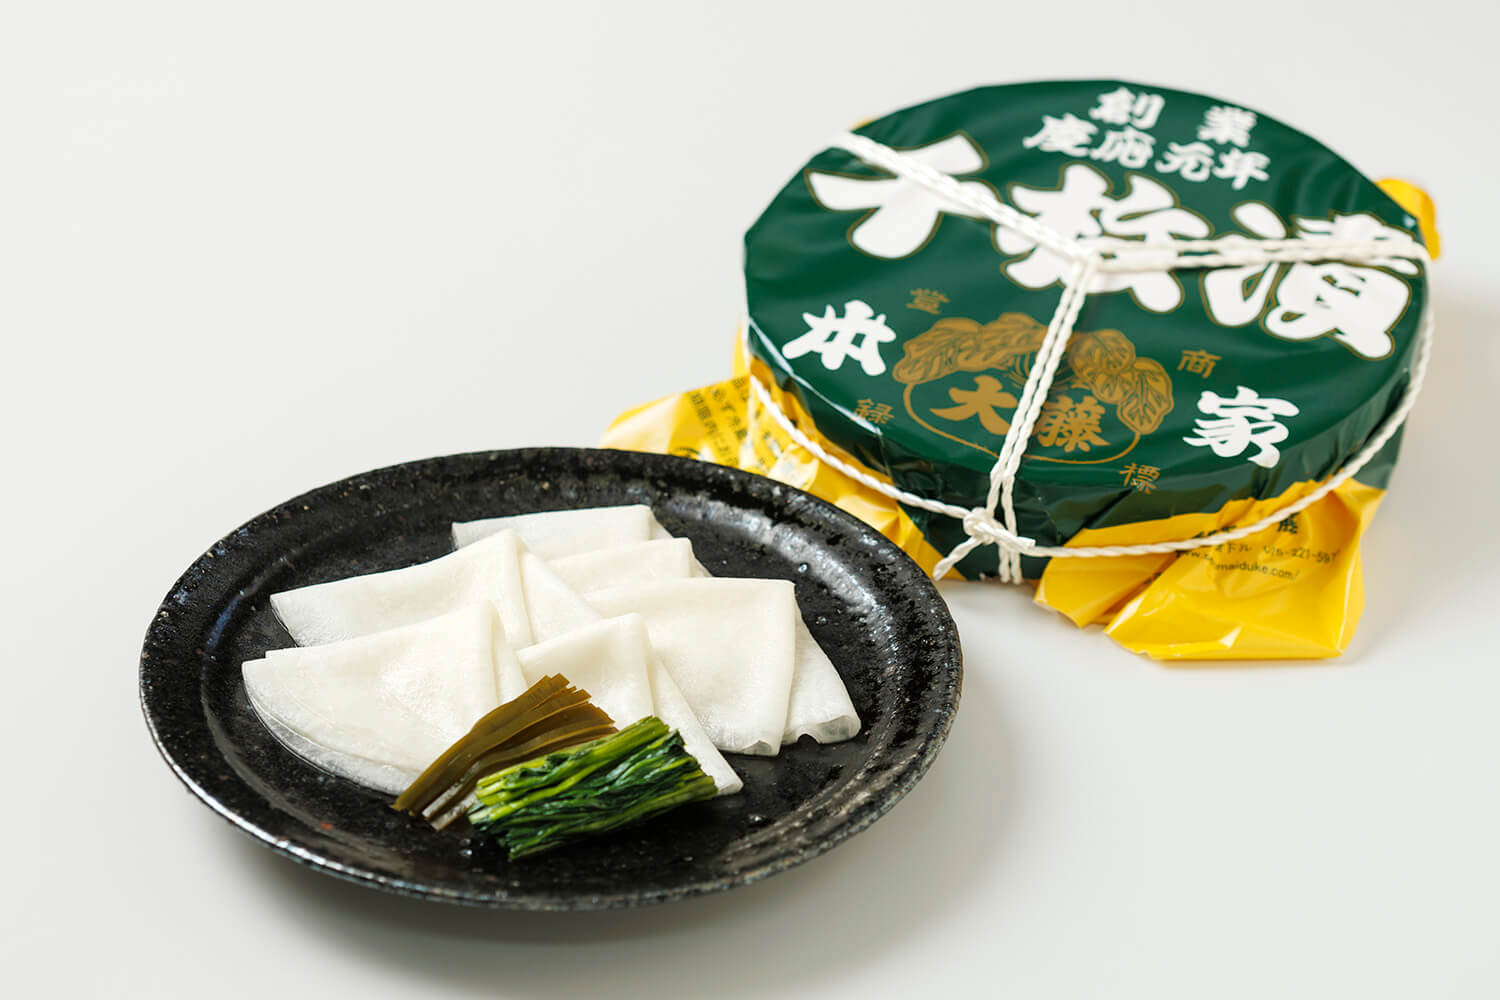 冬の京野菜、聖護院かぶで仕立てる「千枚漬」。袋入りのほか、前日までの予約で樽詰めも。10〜3月頃の販売